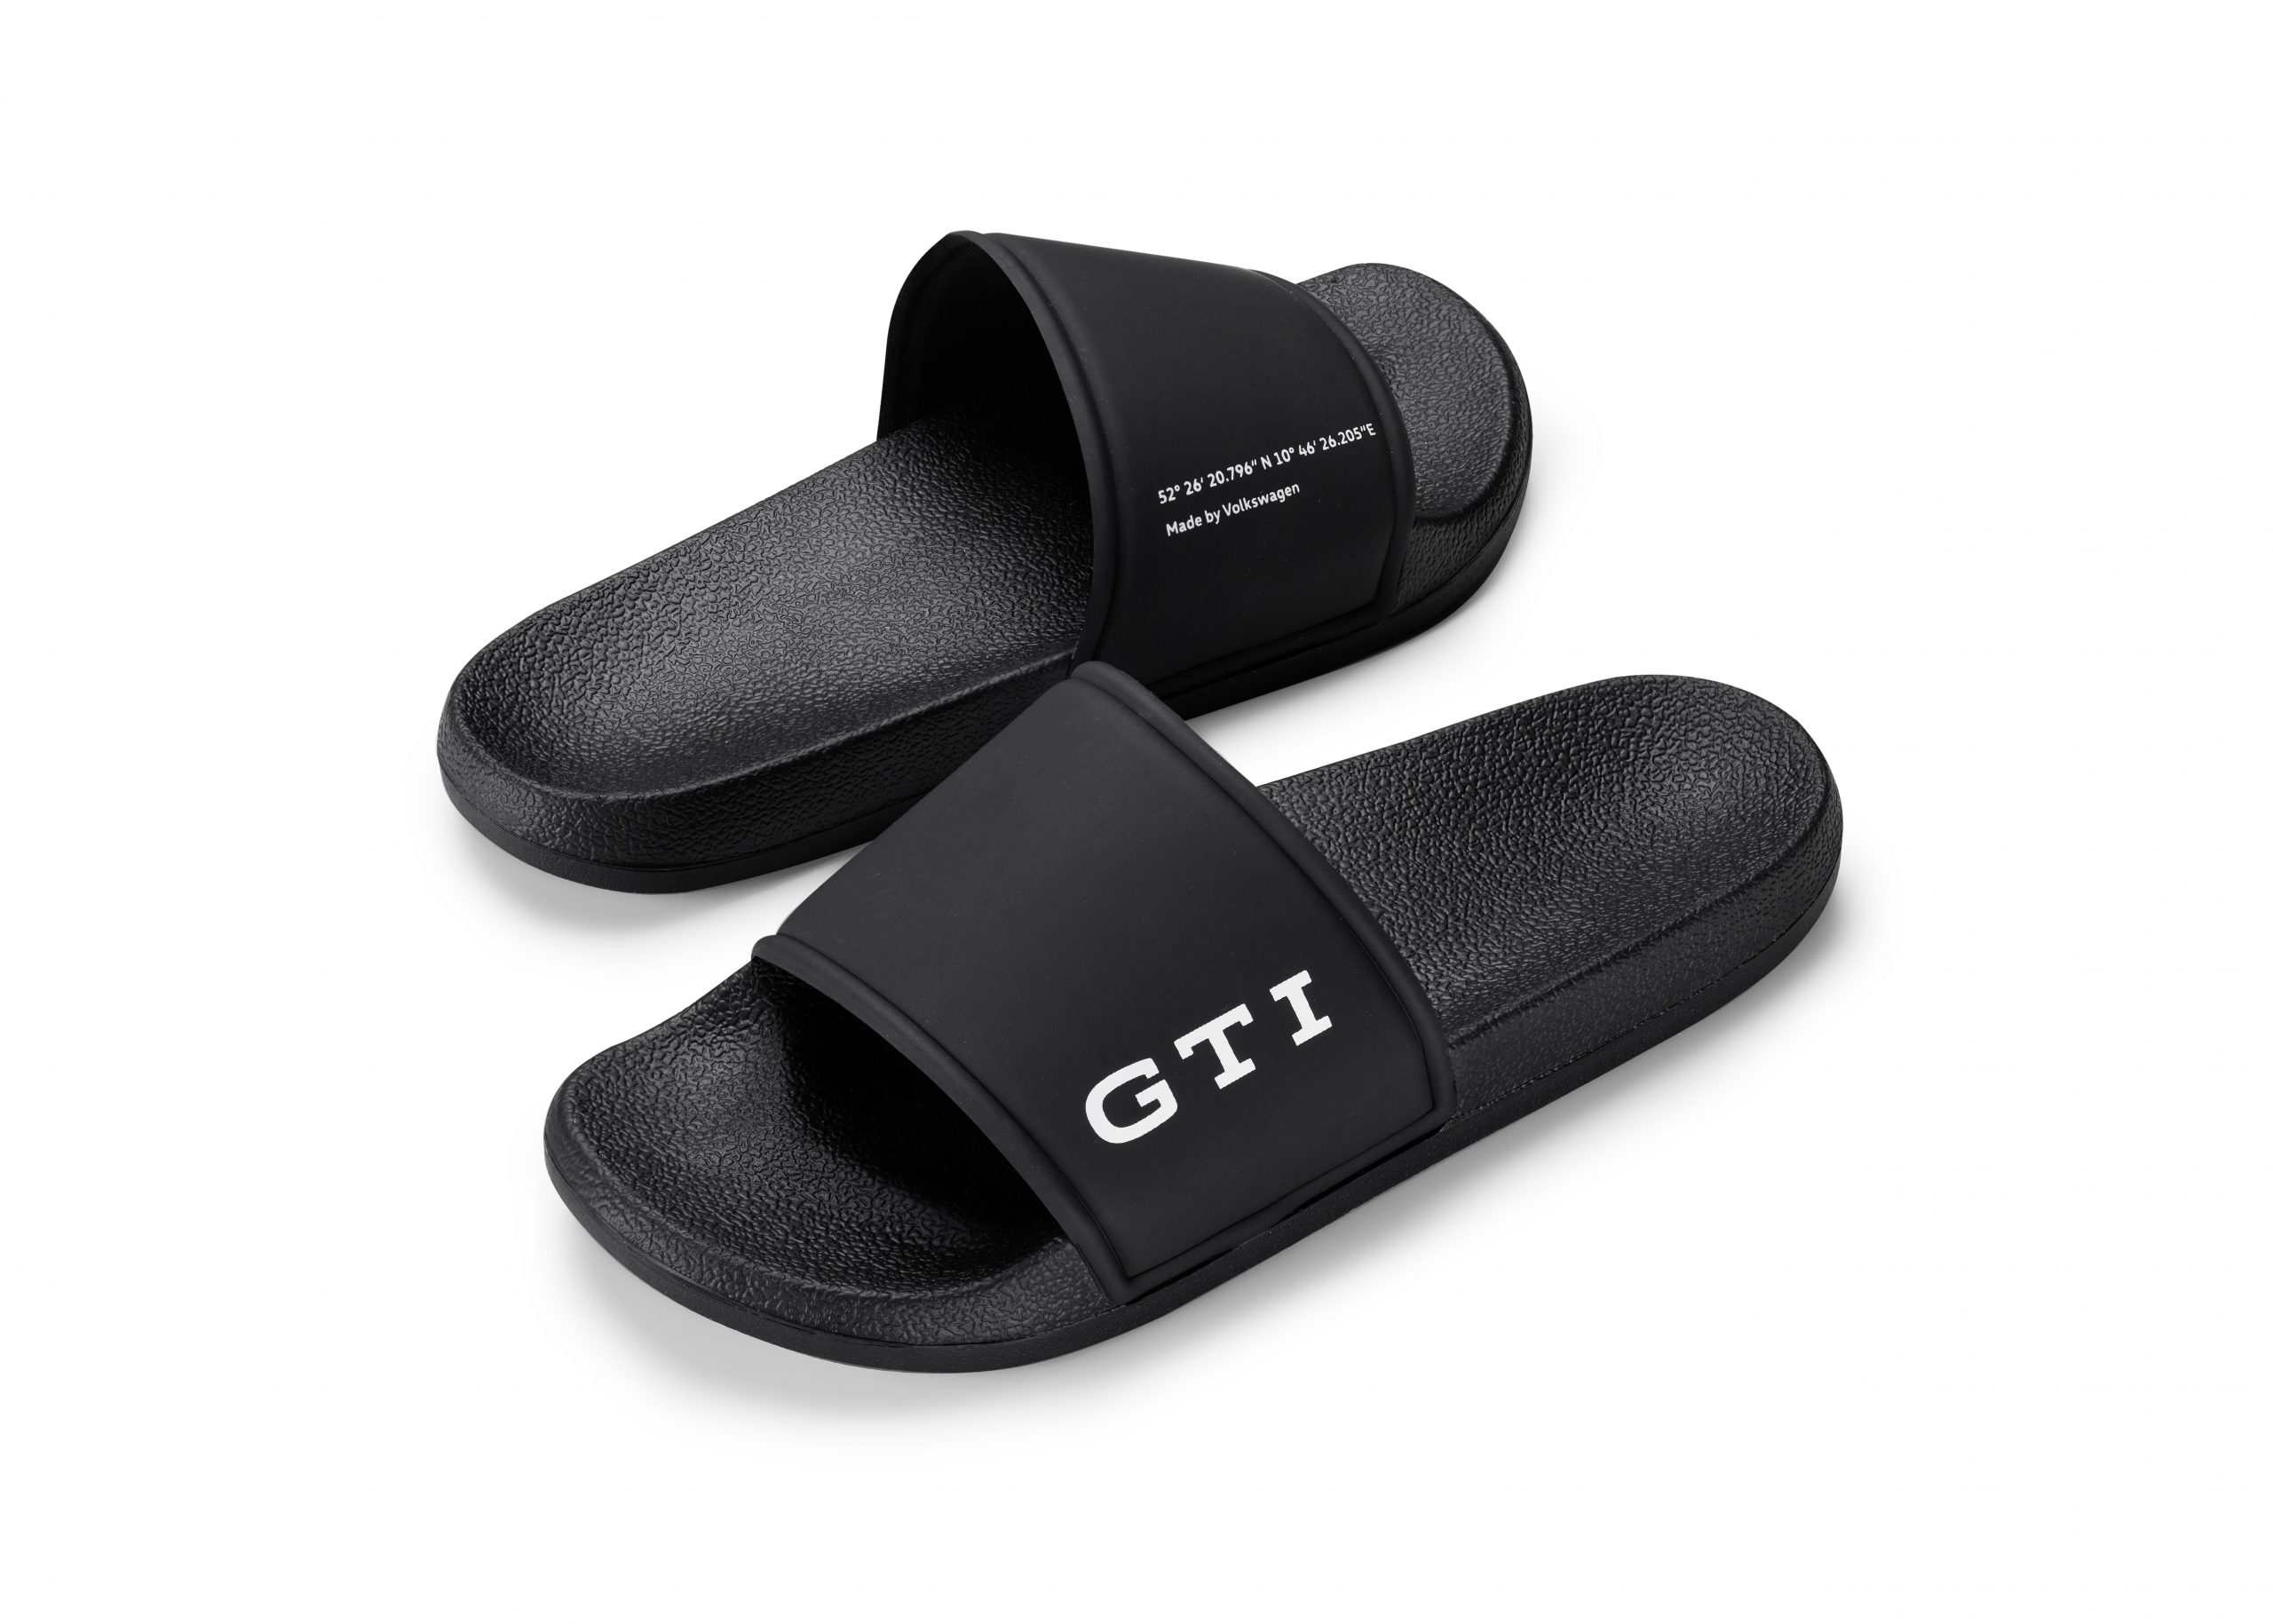 VW GTI Sliders